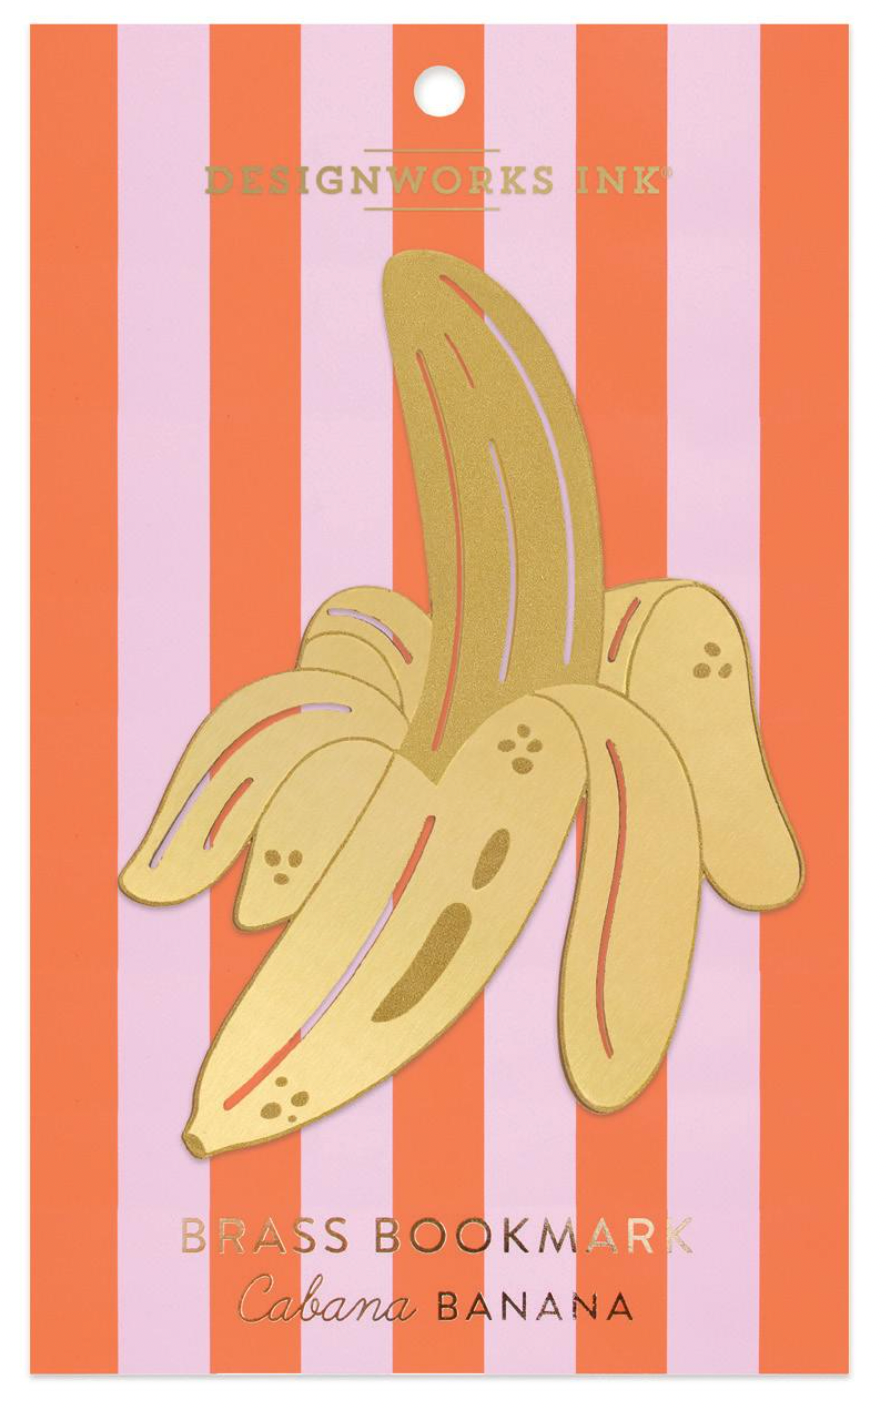 Cabana Banana Brass Bookmark